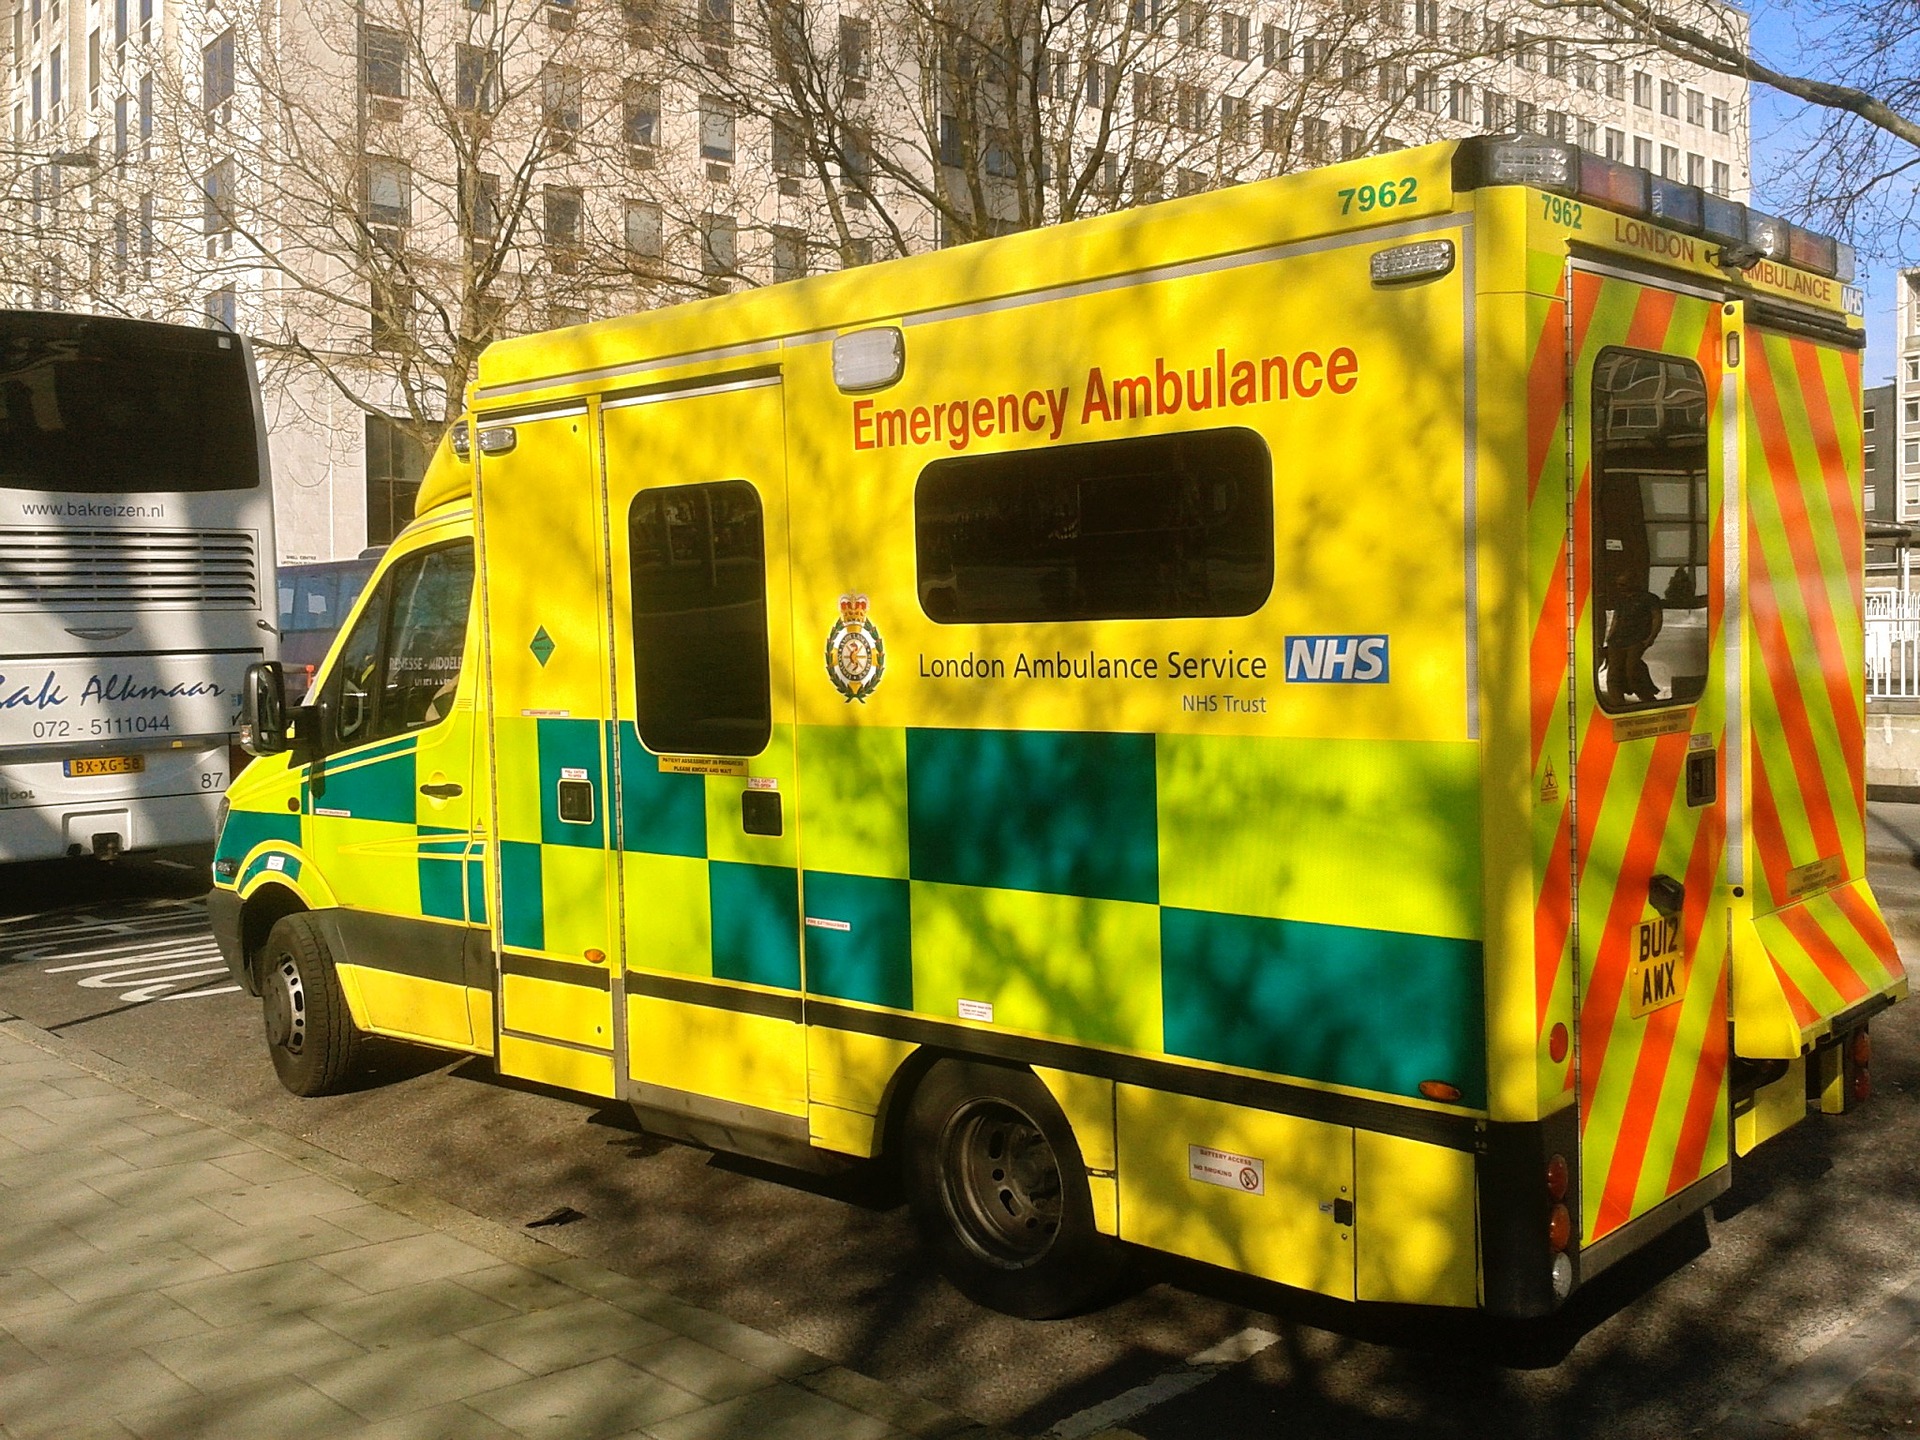 parked ambulance emergency vehicle